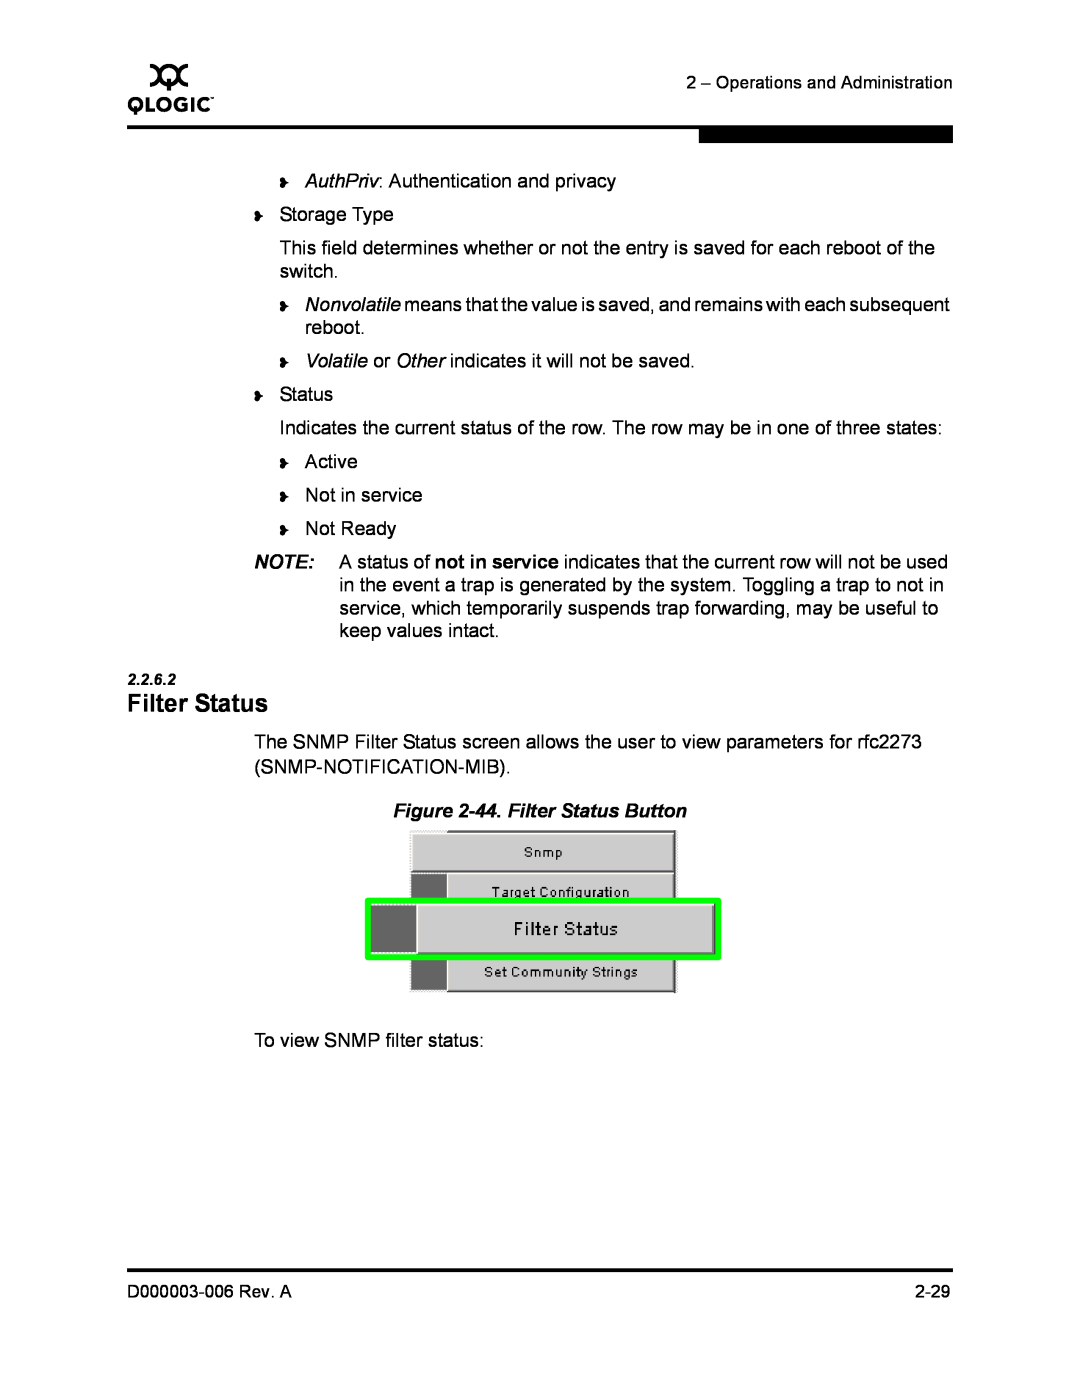 Q-Logic 9000 manual 44. Filter Status Button 